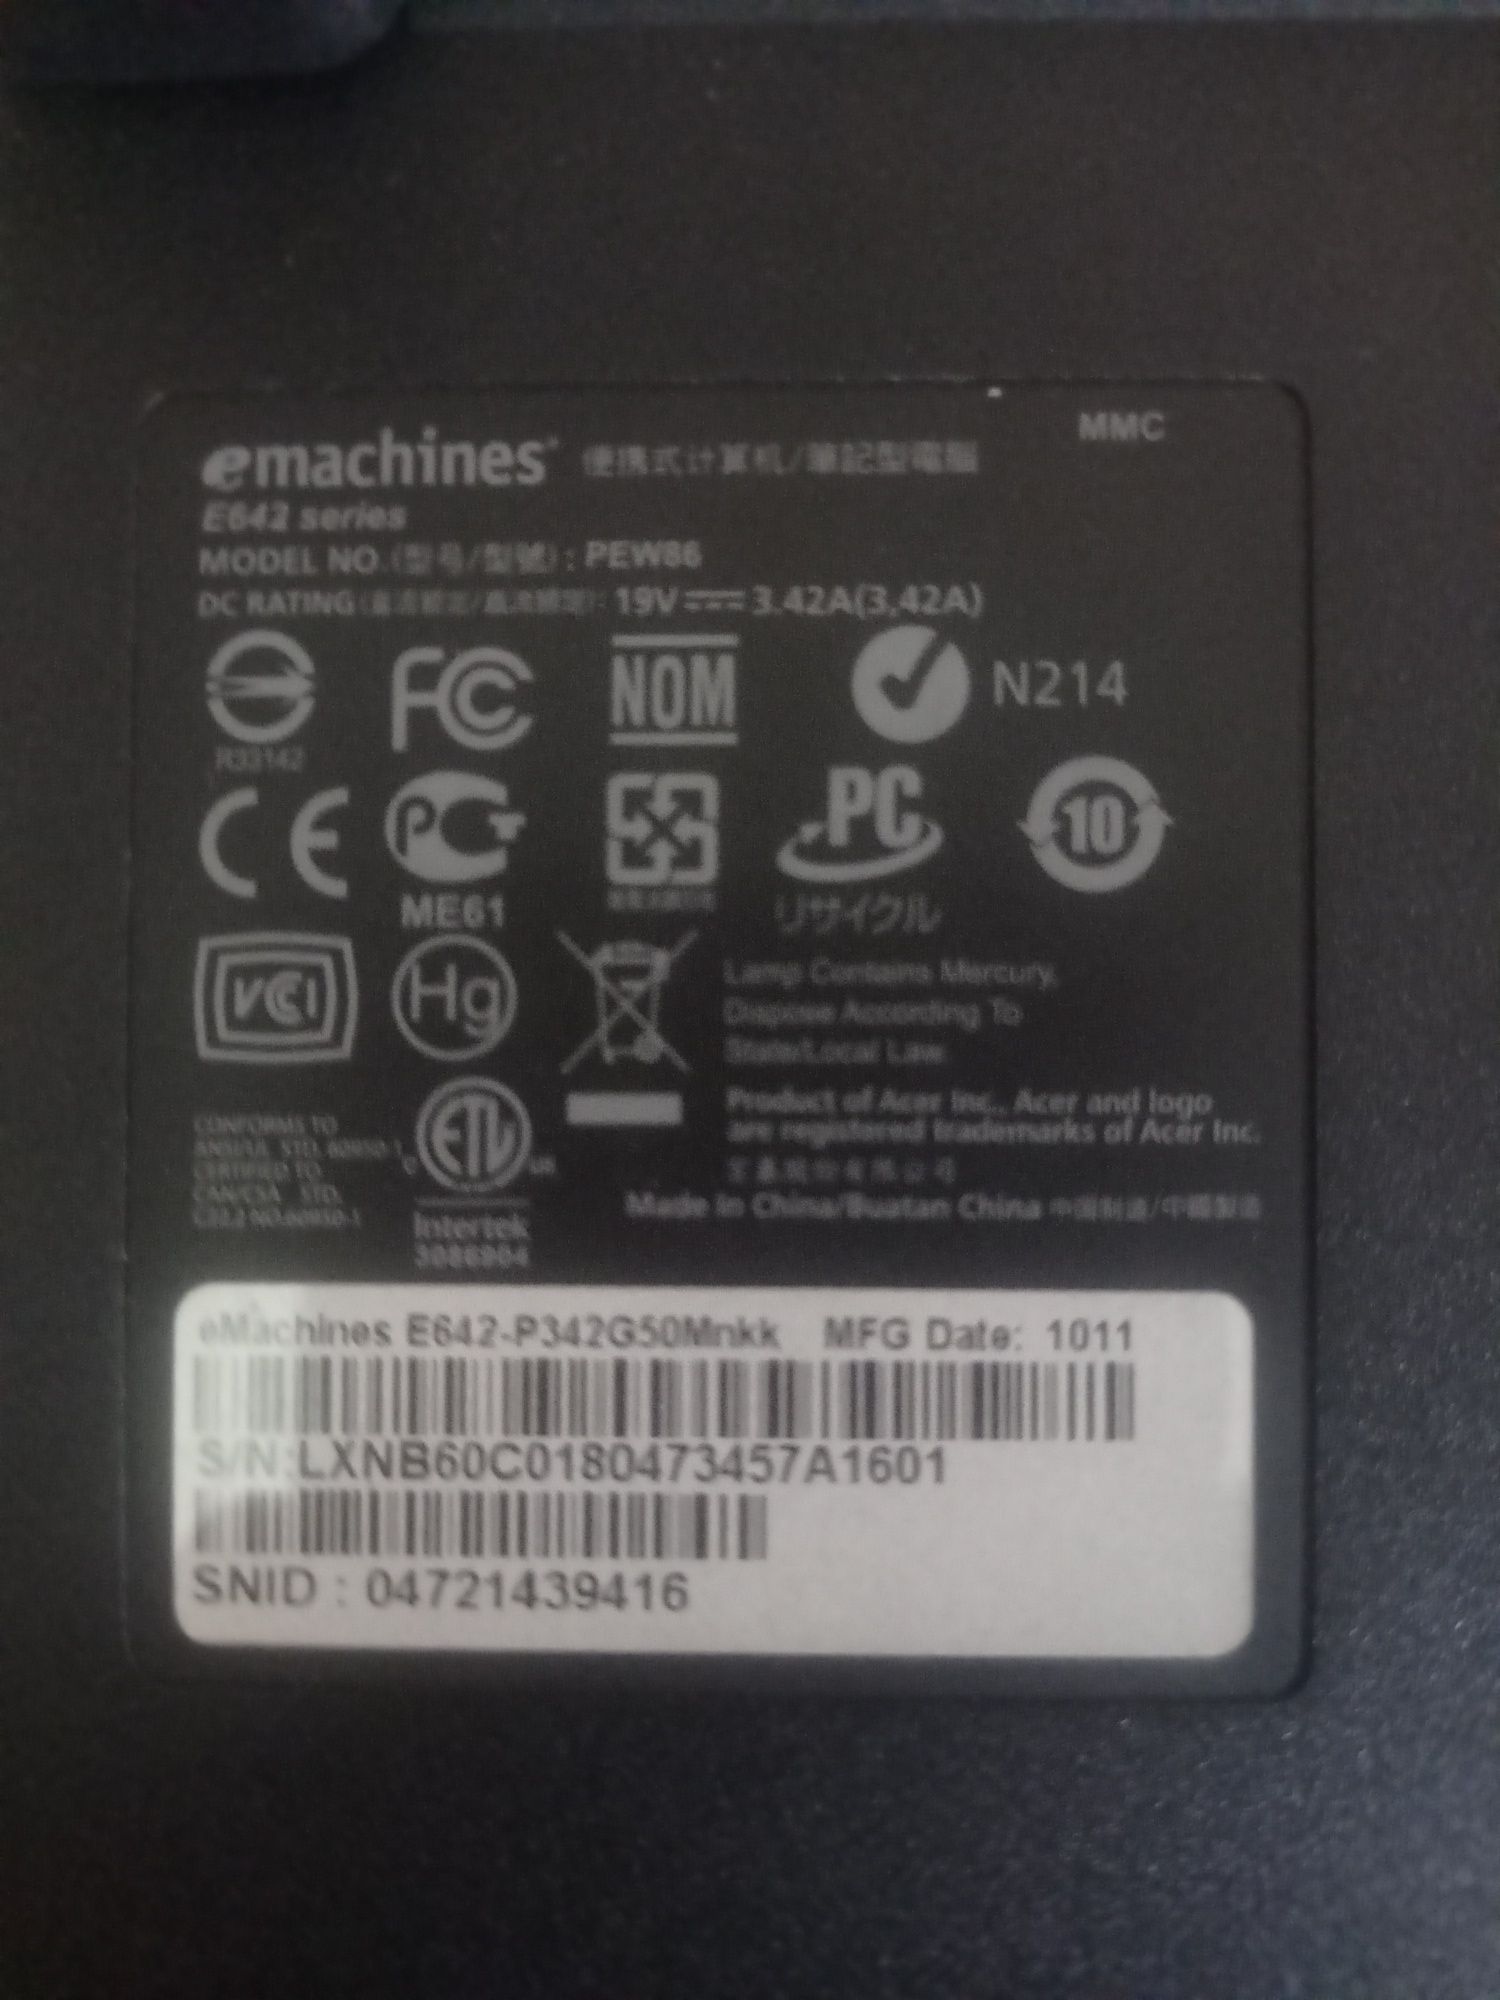 Acer eMachines e642